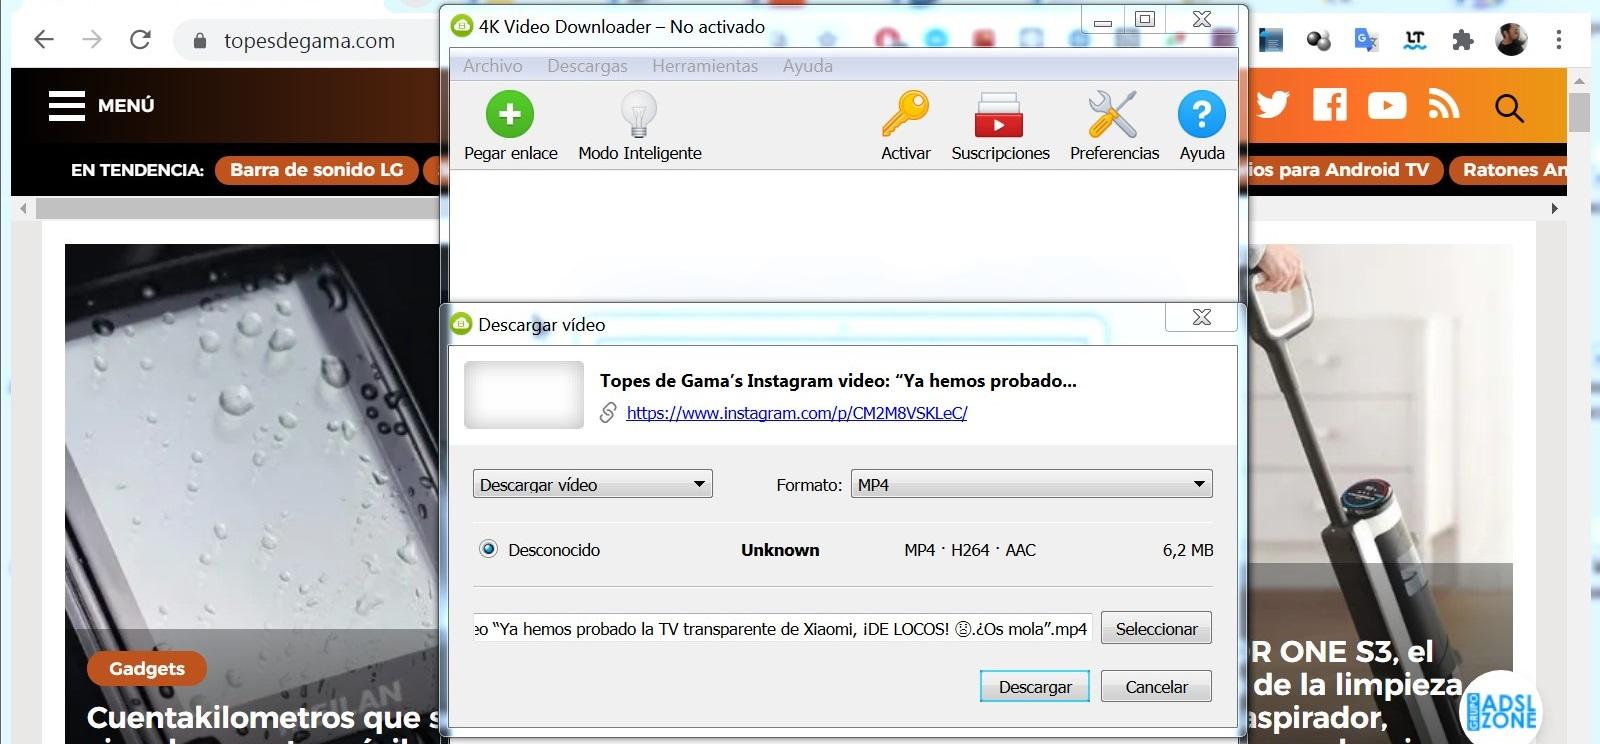 for mac instal 4K Downloader 5.8.5